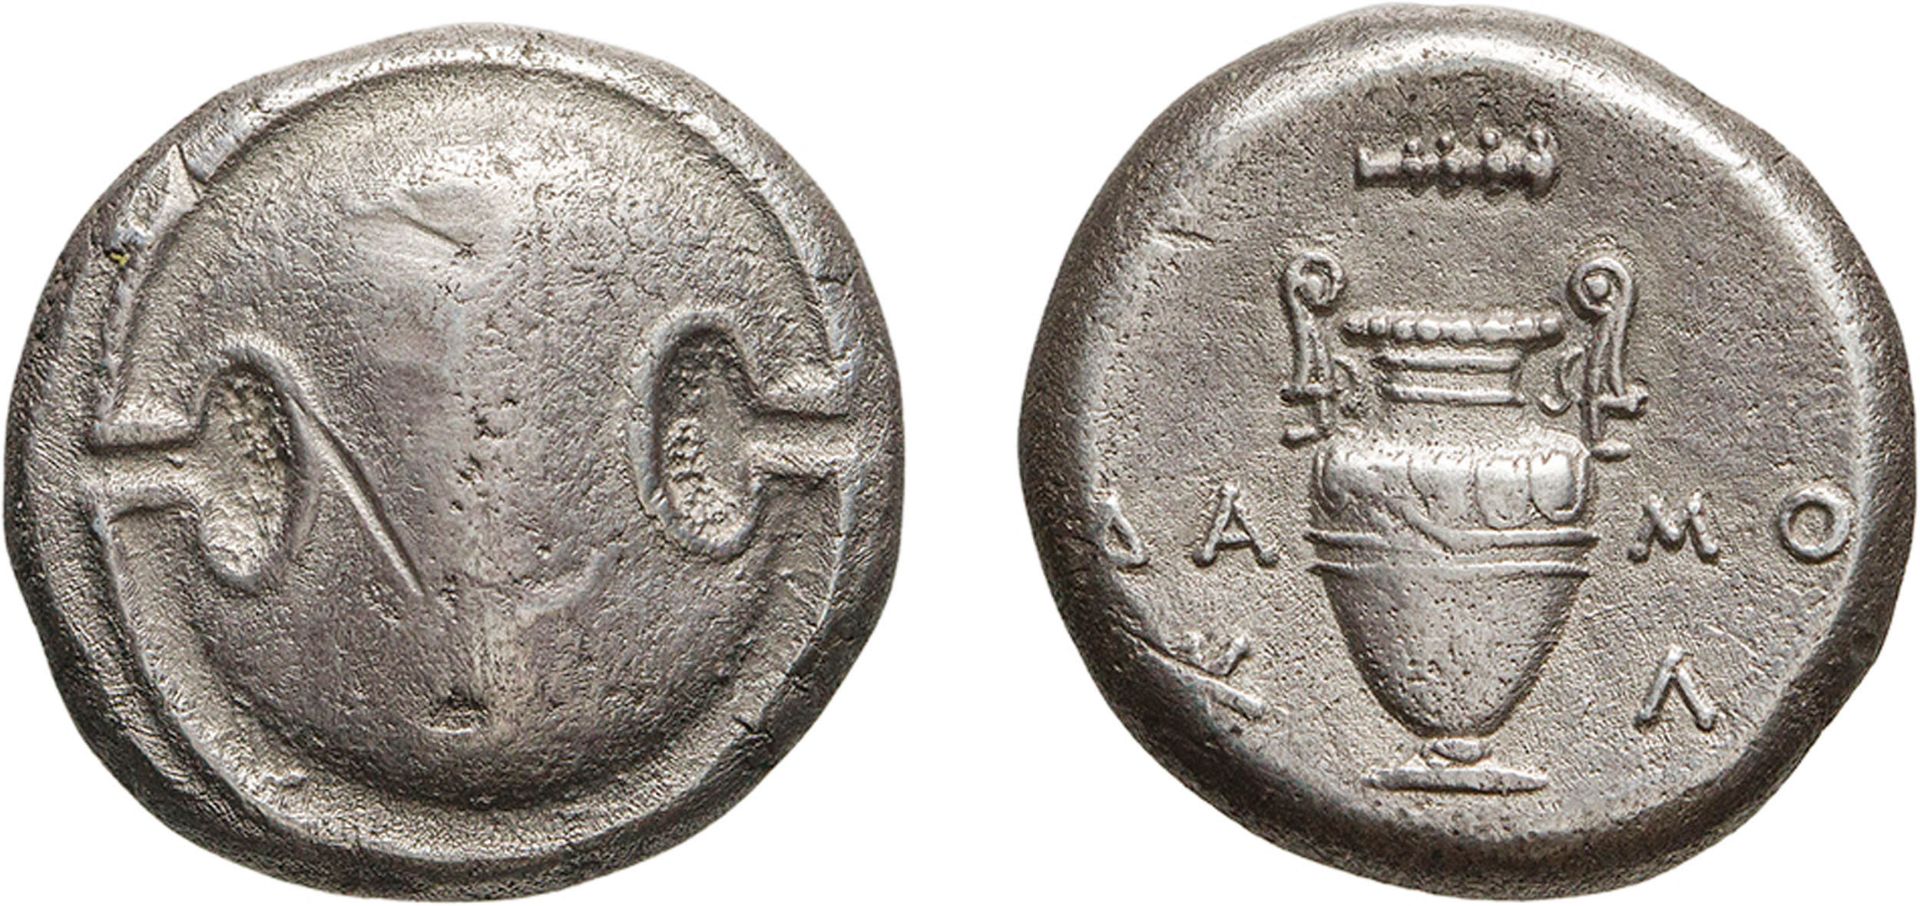 MONETE GRECHE. BEOZIA. TEBE (CIRCA 363-338 A.C.). STATERE.